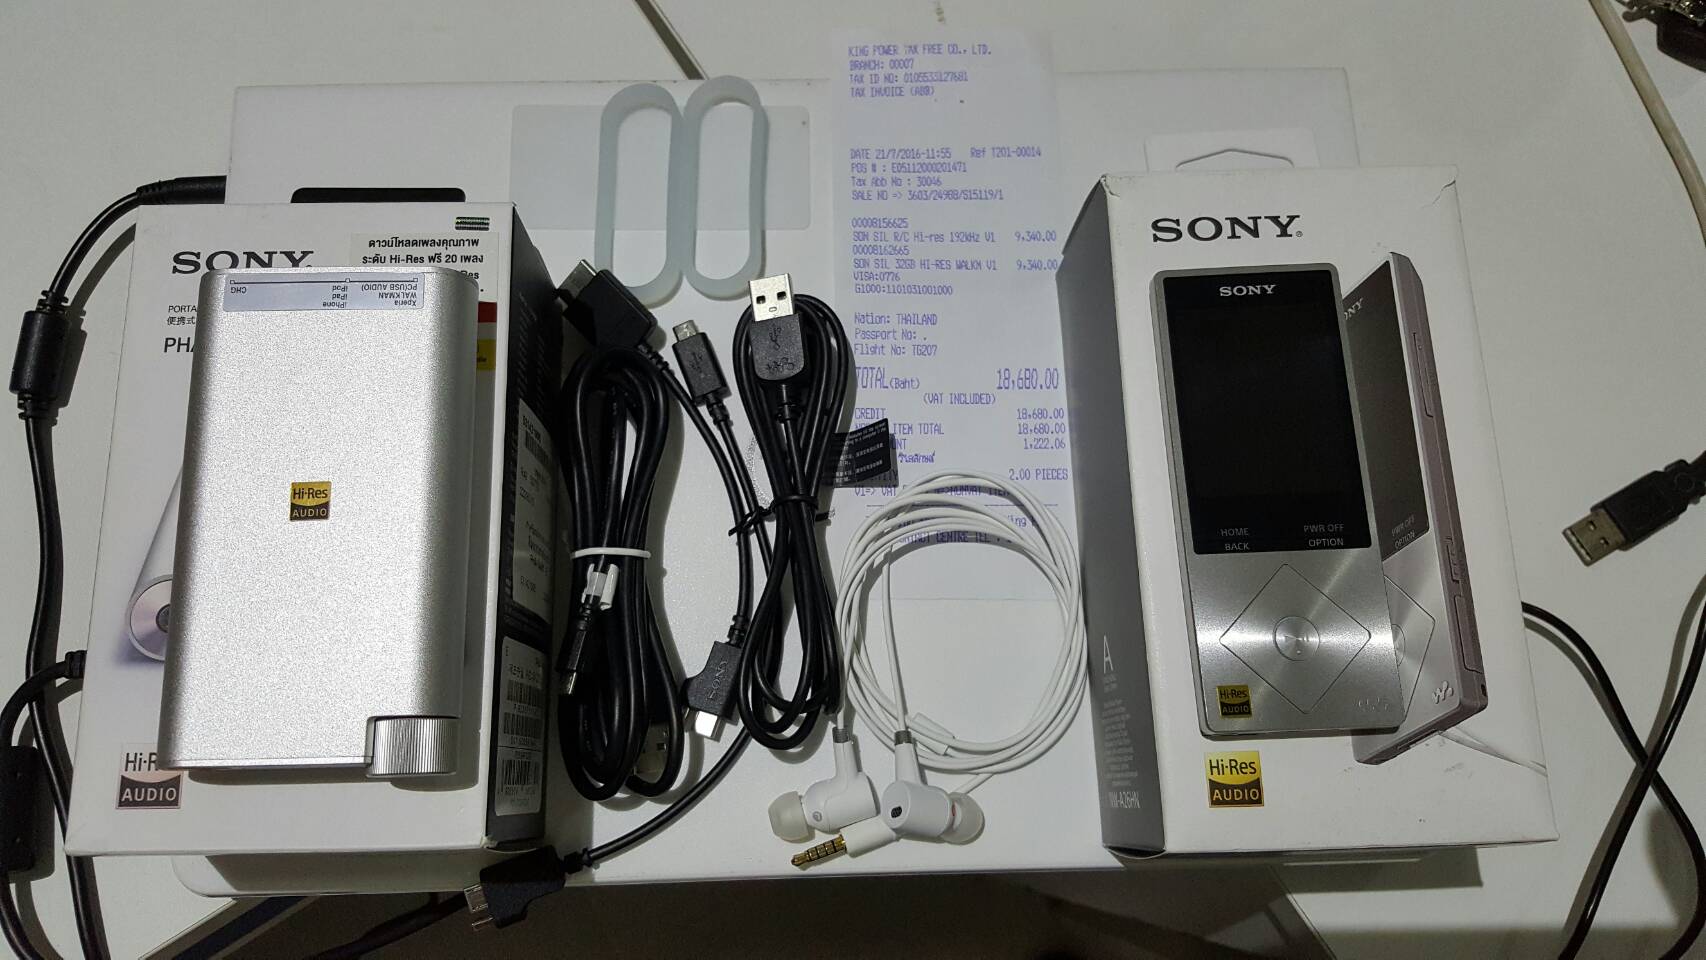 ขออนุญาตเฮียขาย Sony Walkman NW-A26HN สีเงิน พร้อมหูฟัง ใหม่ๆ ยกกล่อง